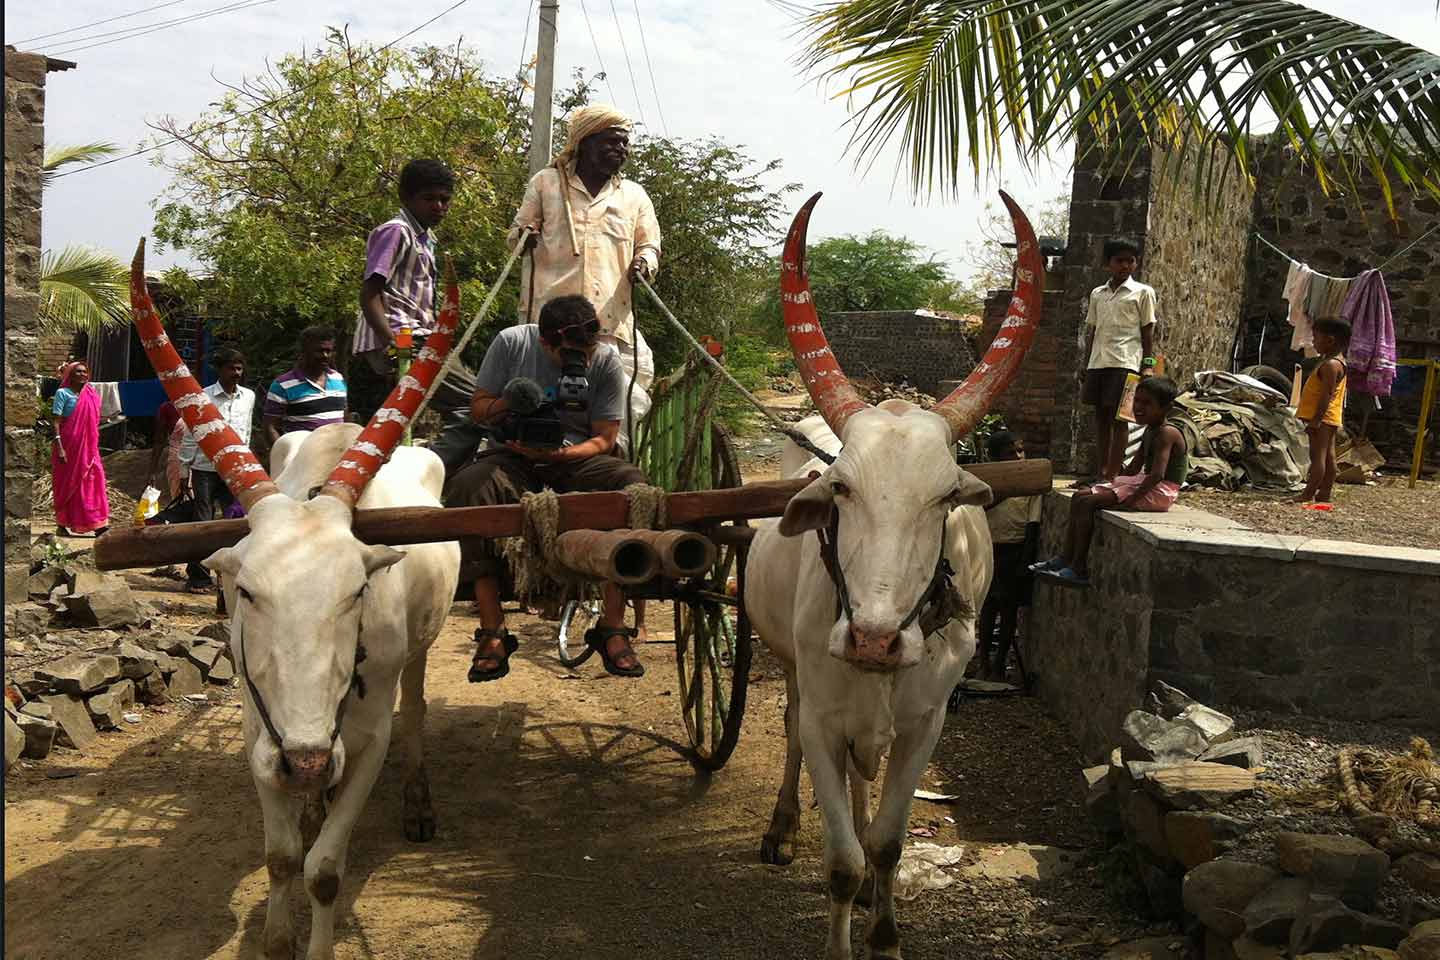 Ox cart India Preston Street Films